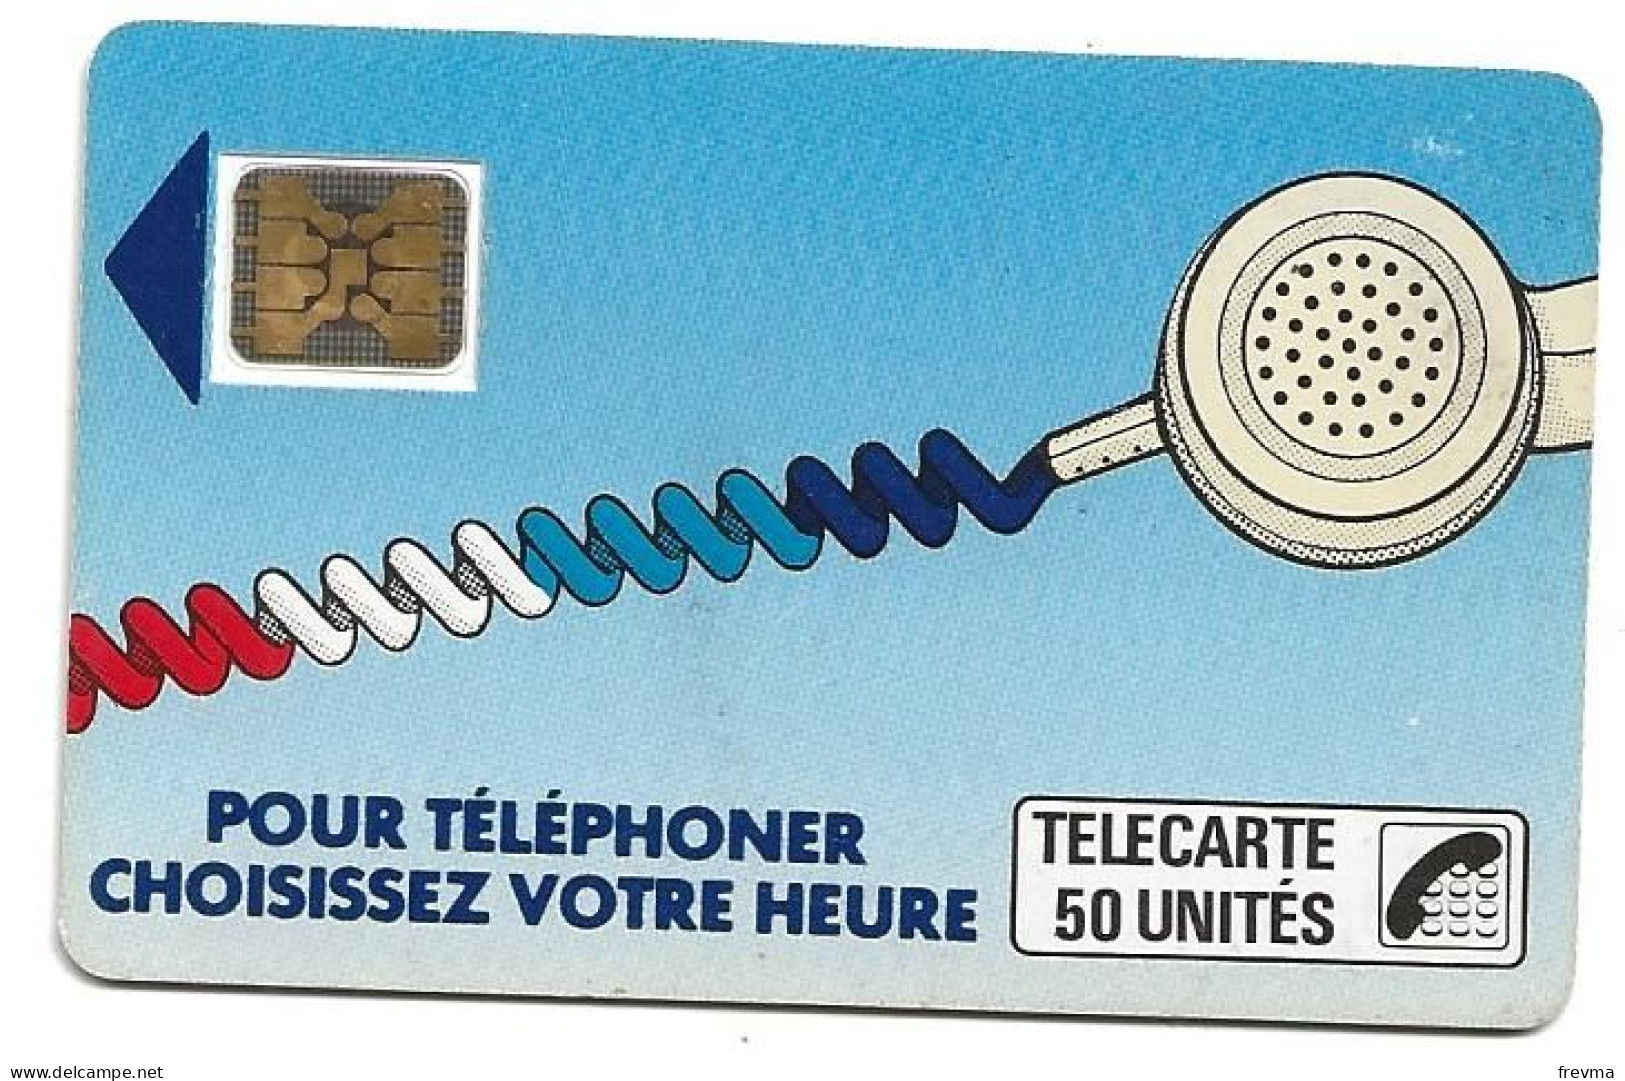 Telecarte K 16 50 Unités SC5on - Cordons'